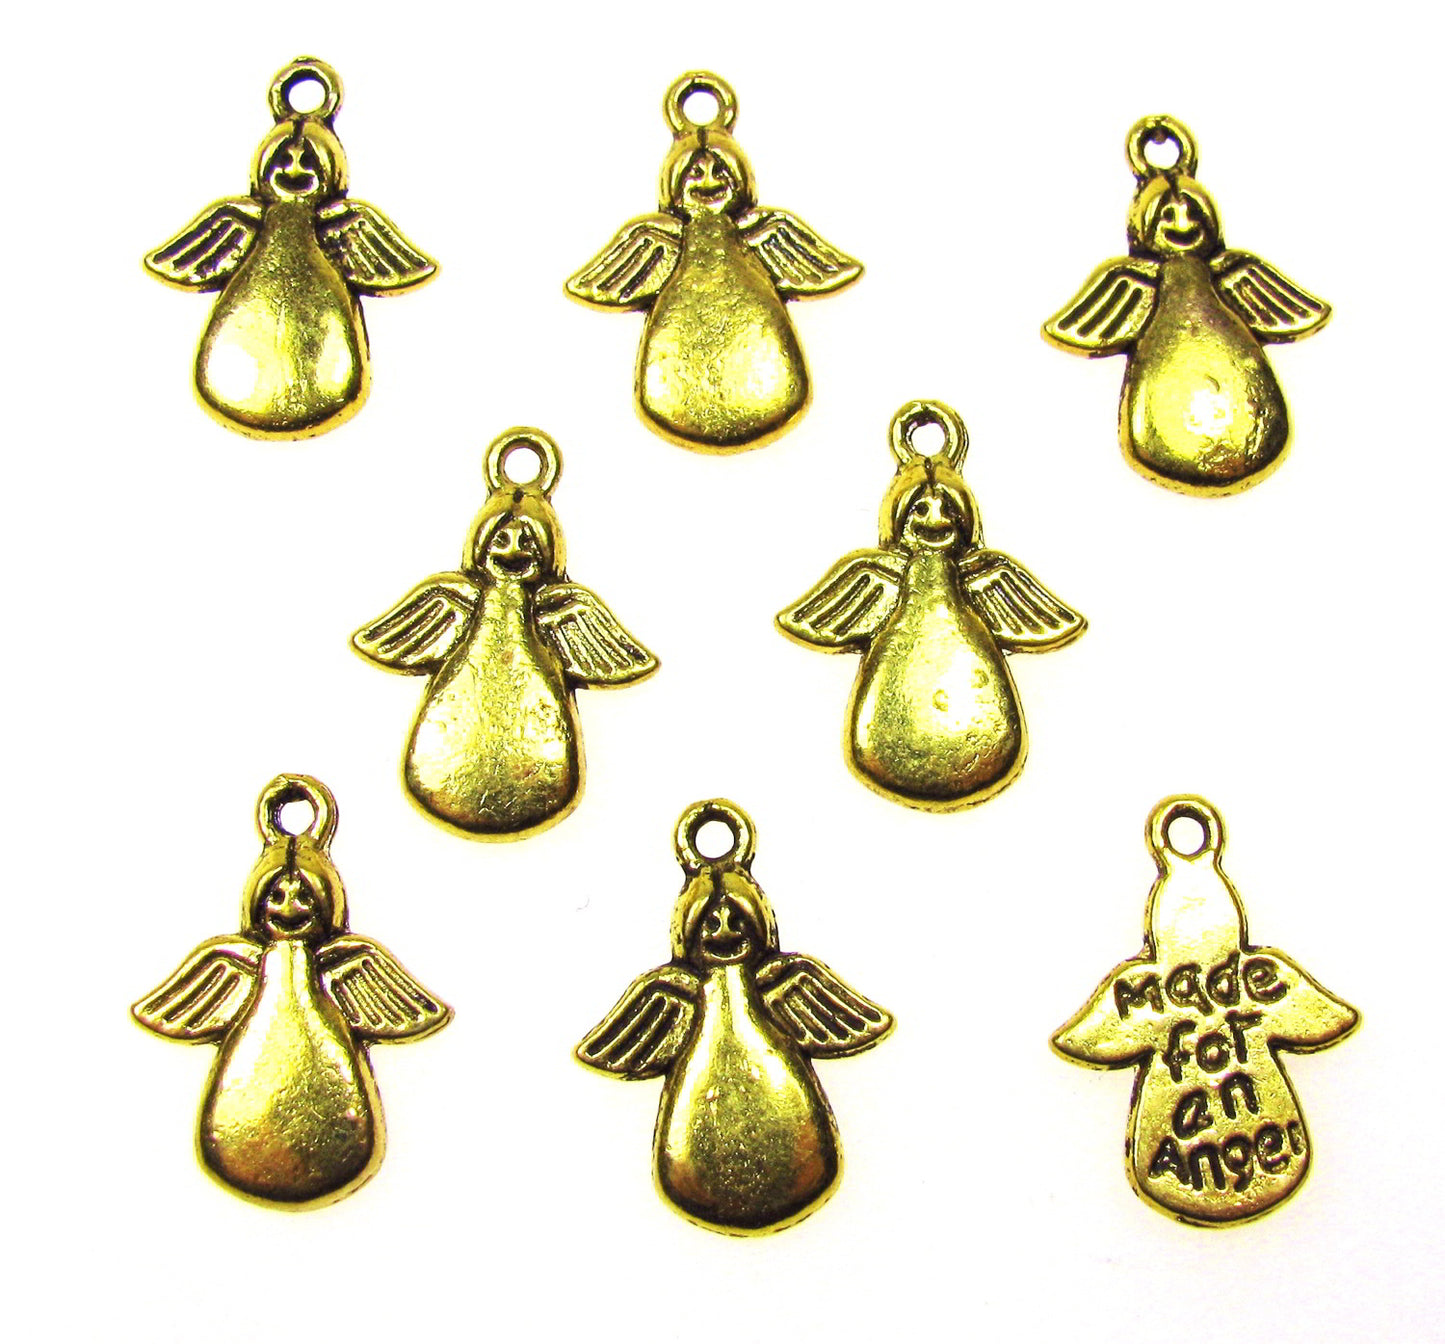 8 Engel Metallanhänger goldfarben mit Aufschrift, Made for an angel, Anhänger